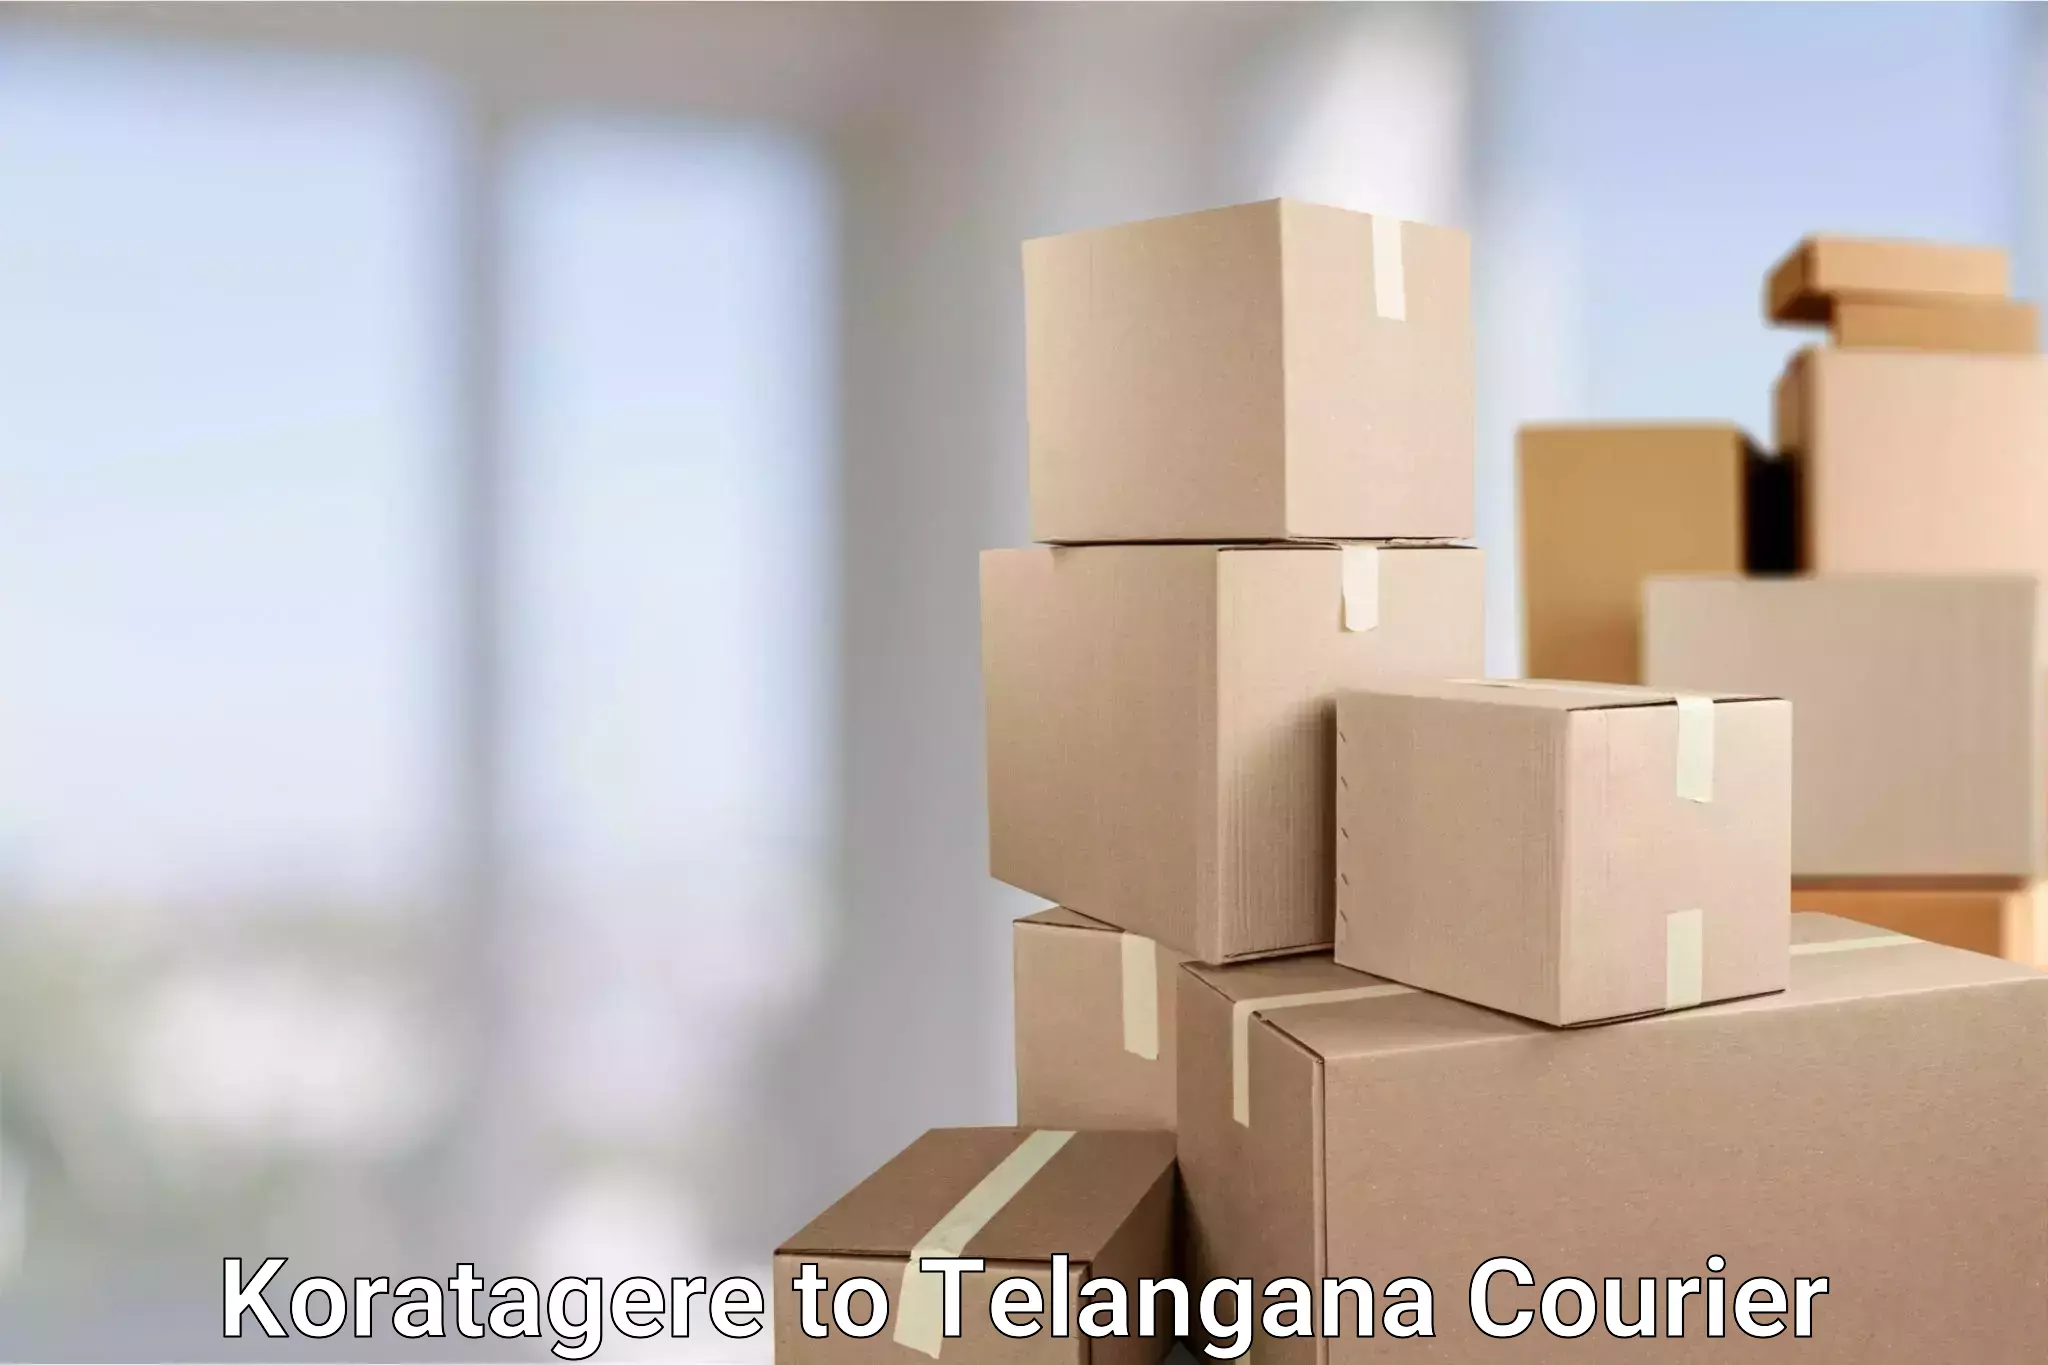 Nationwide shipping coverage Koratagere to Telangana